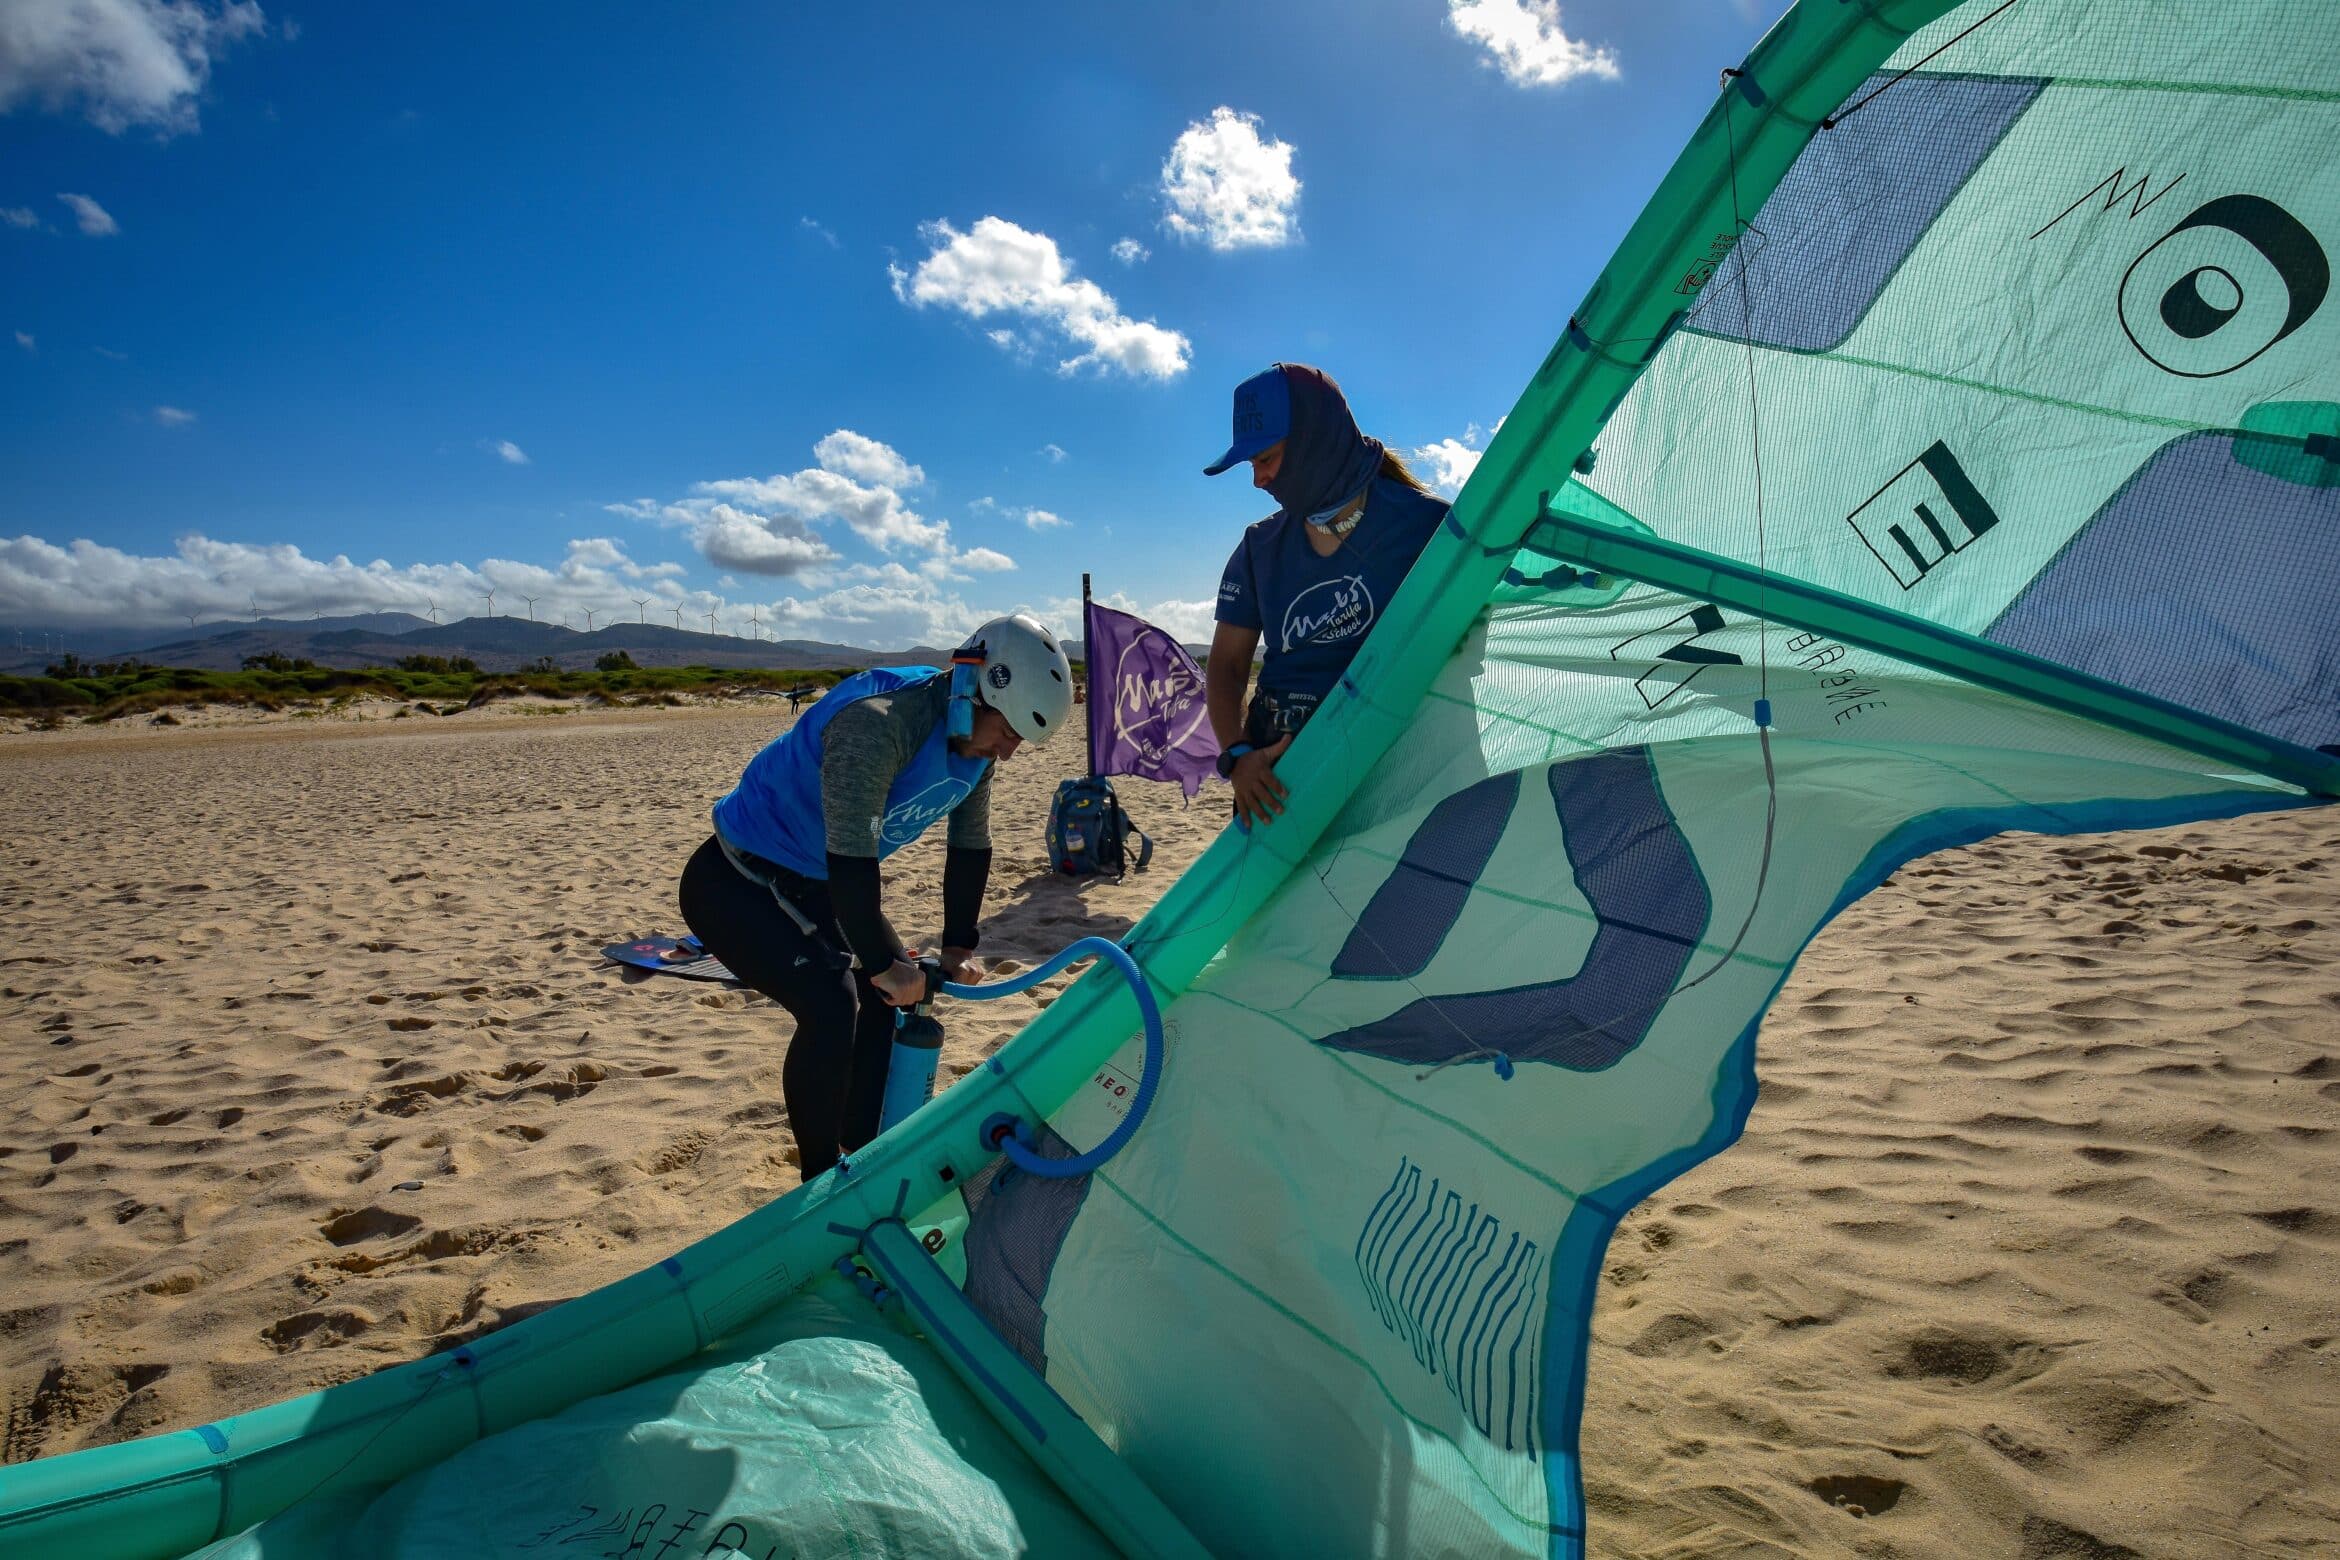 leren kitesurfen in Tarifa